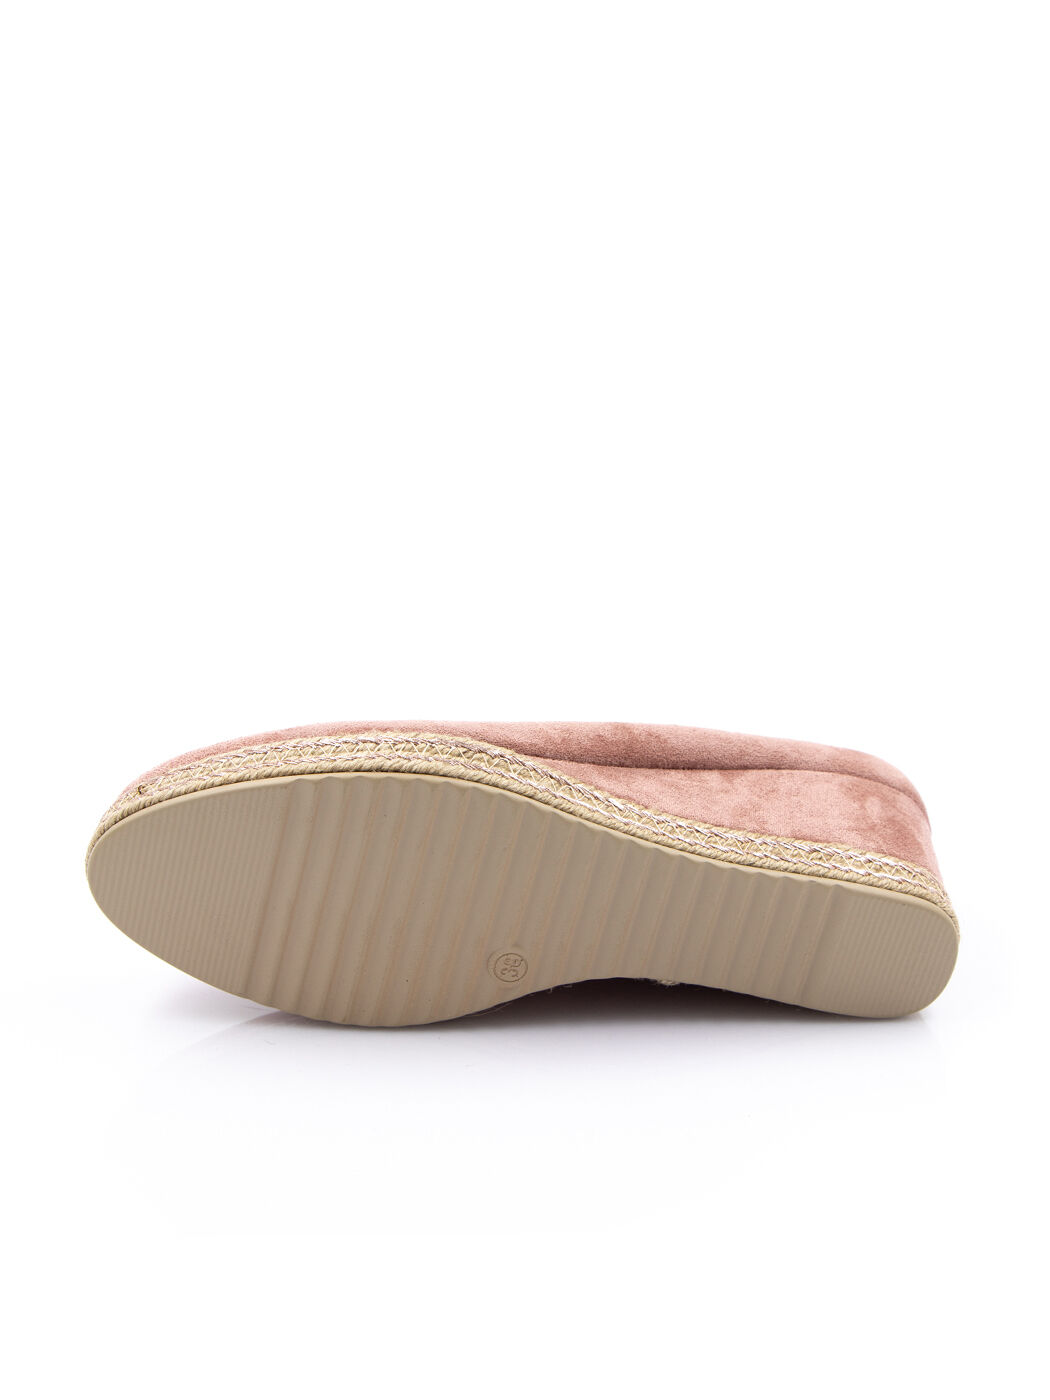 Туфли женские розовые экозамша каблук устойчивый демисезон от производителя 2M вид 2